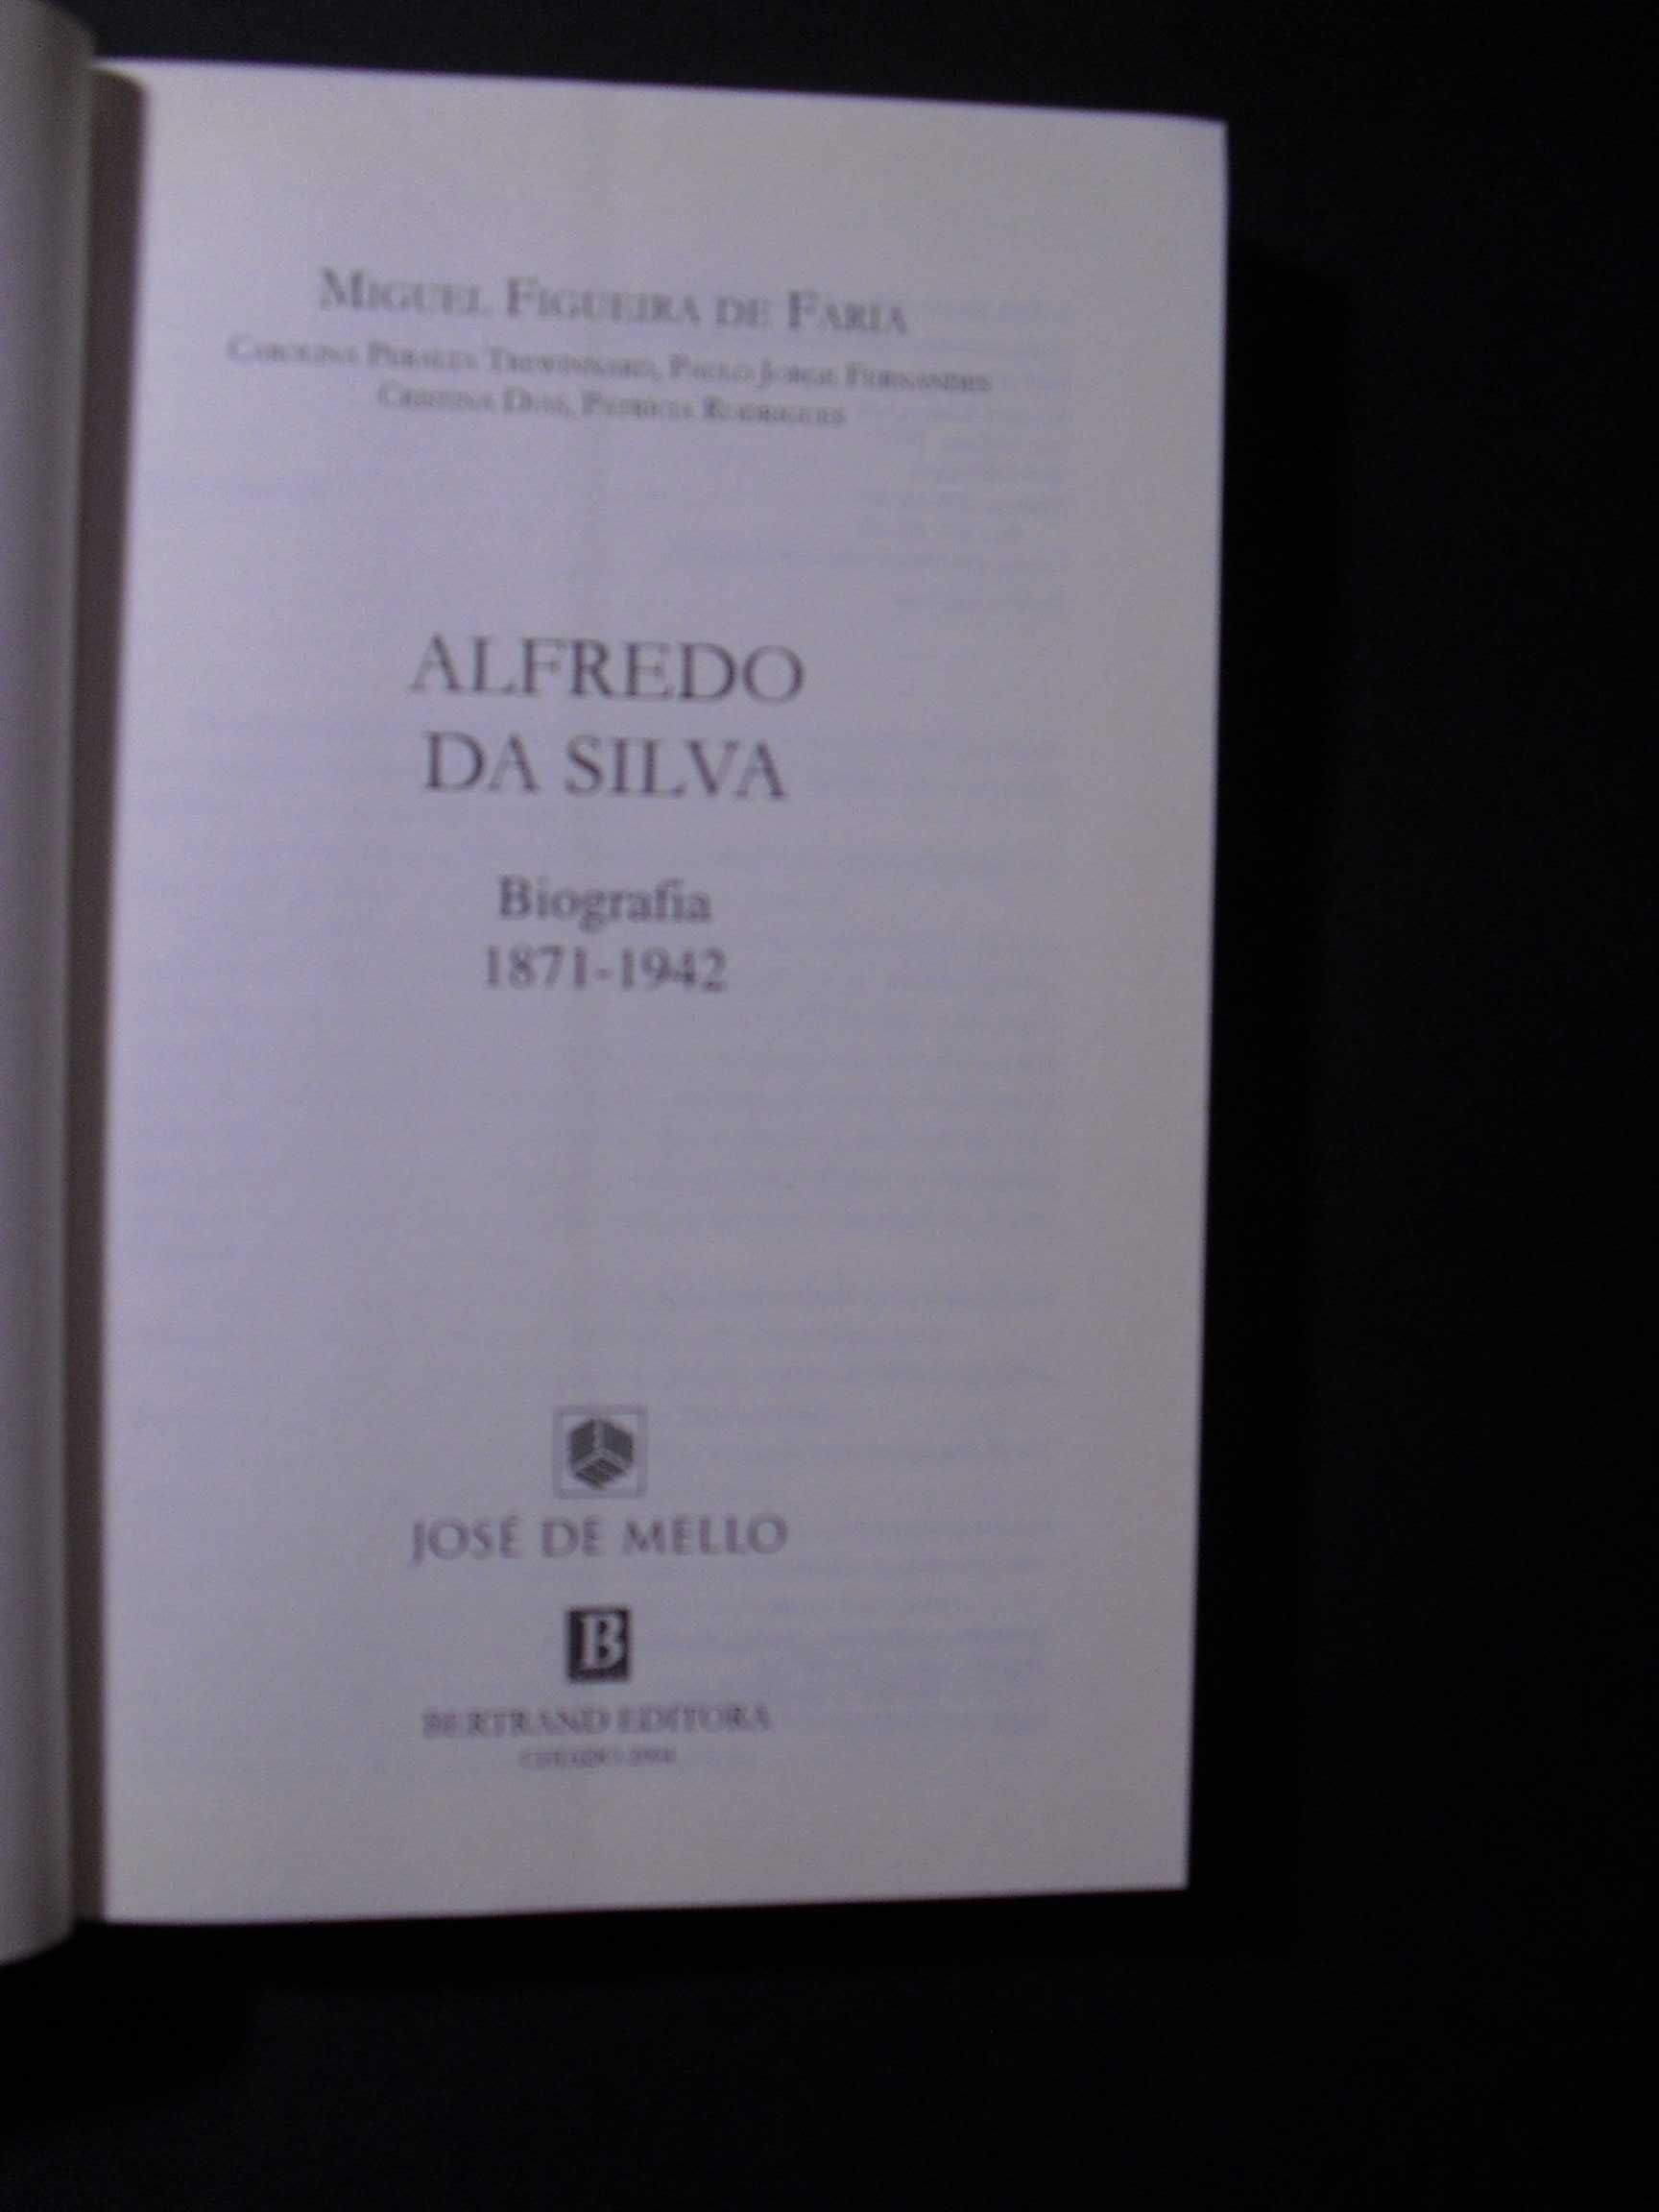 Faria (Miguel Figueira de);Alfredo da Silva-1871/1942-Biografia